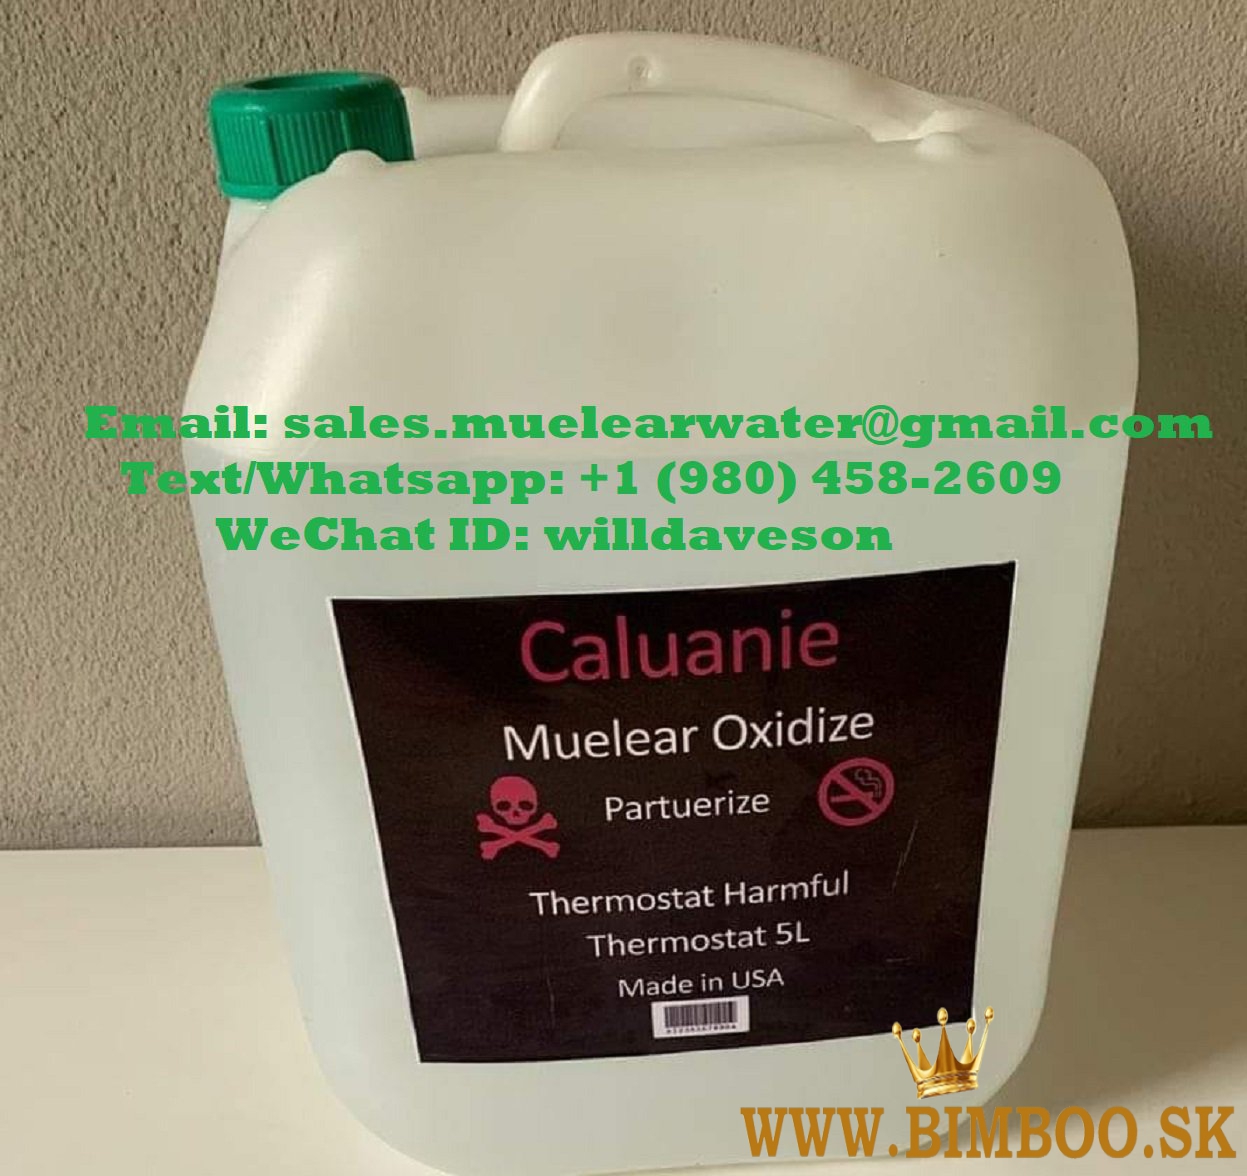 Oxidize Caluanie for discount supply